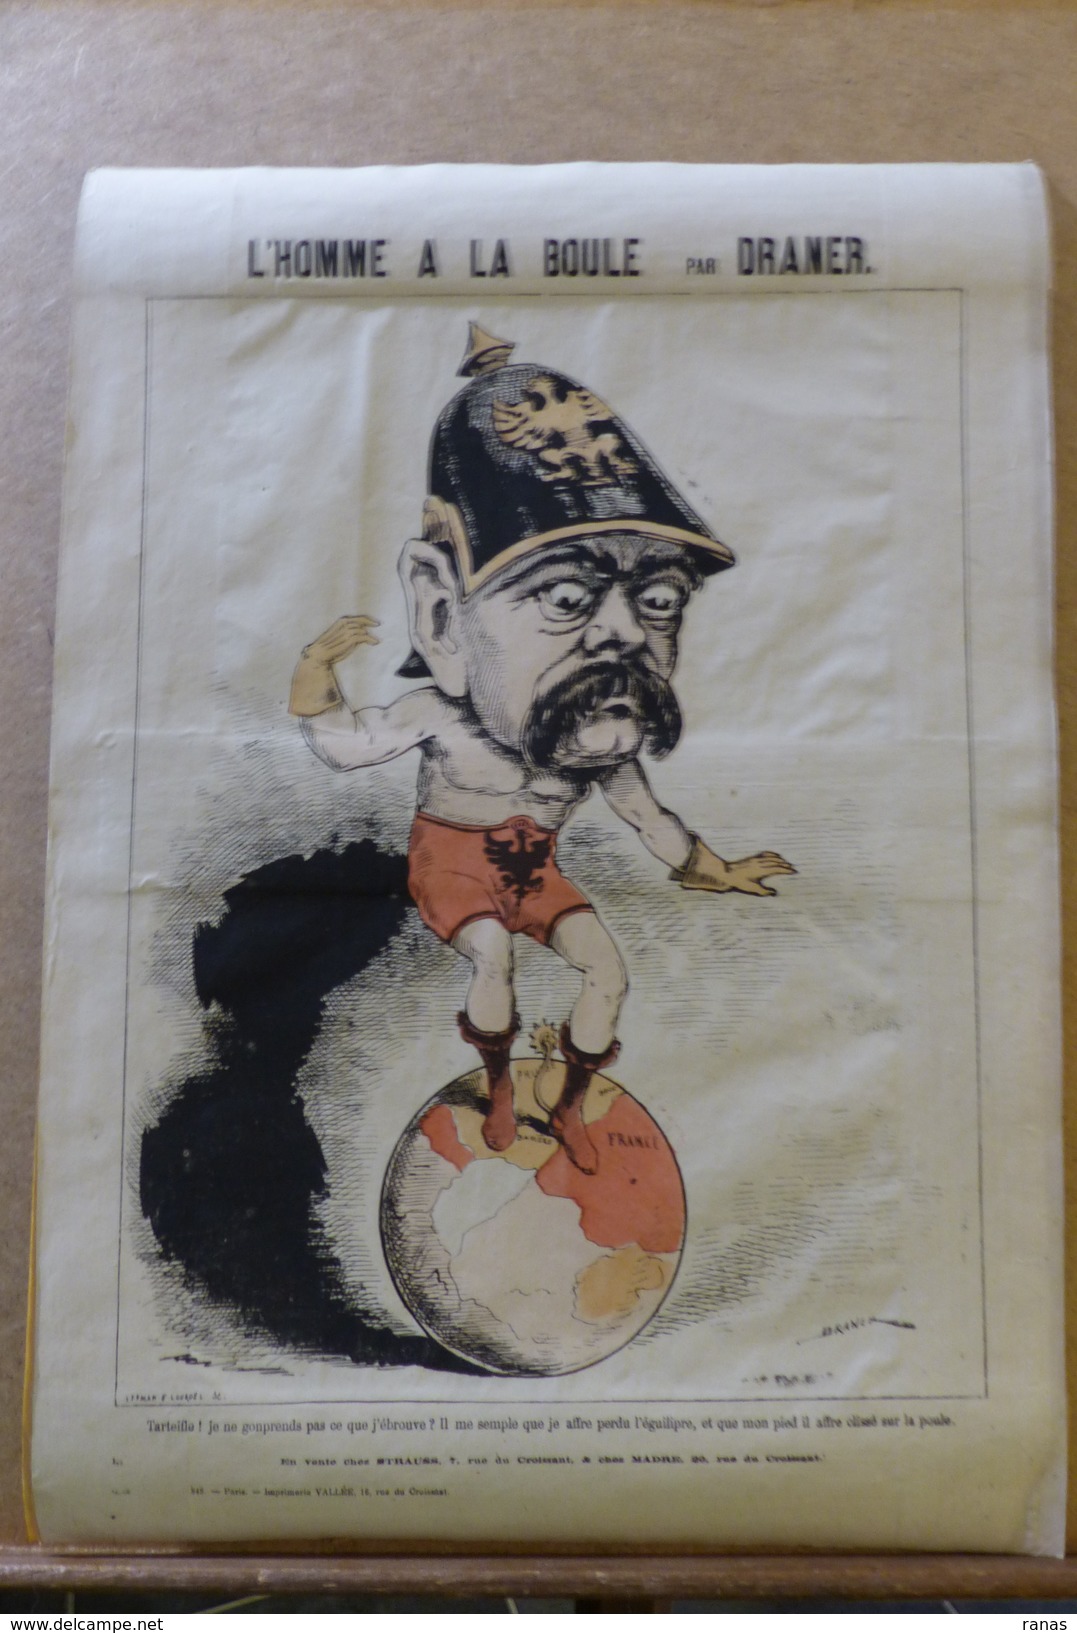 Estampe Gravure Satirique Caricature D'époque 1870 Bismarck Par DRANER Planisphère 43,5 X 31 - Estampes & Gravures